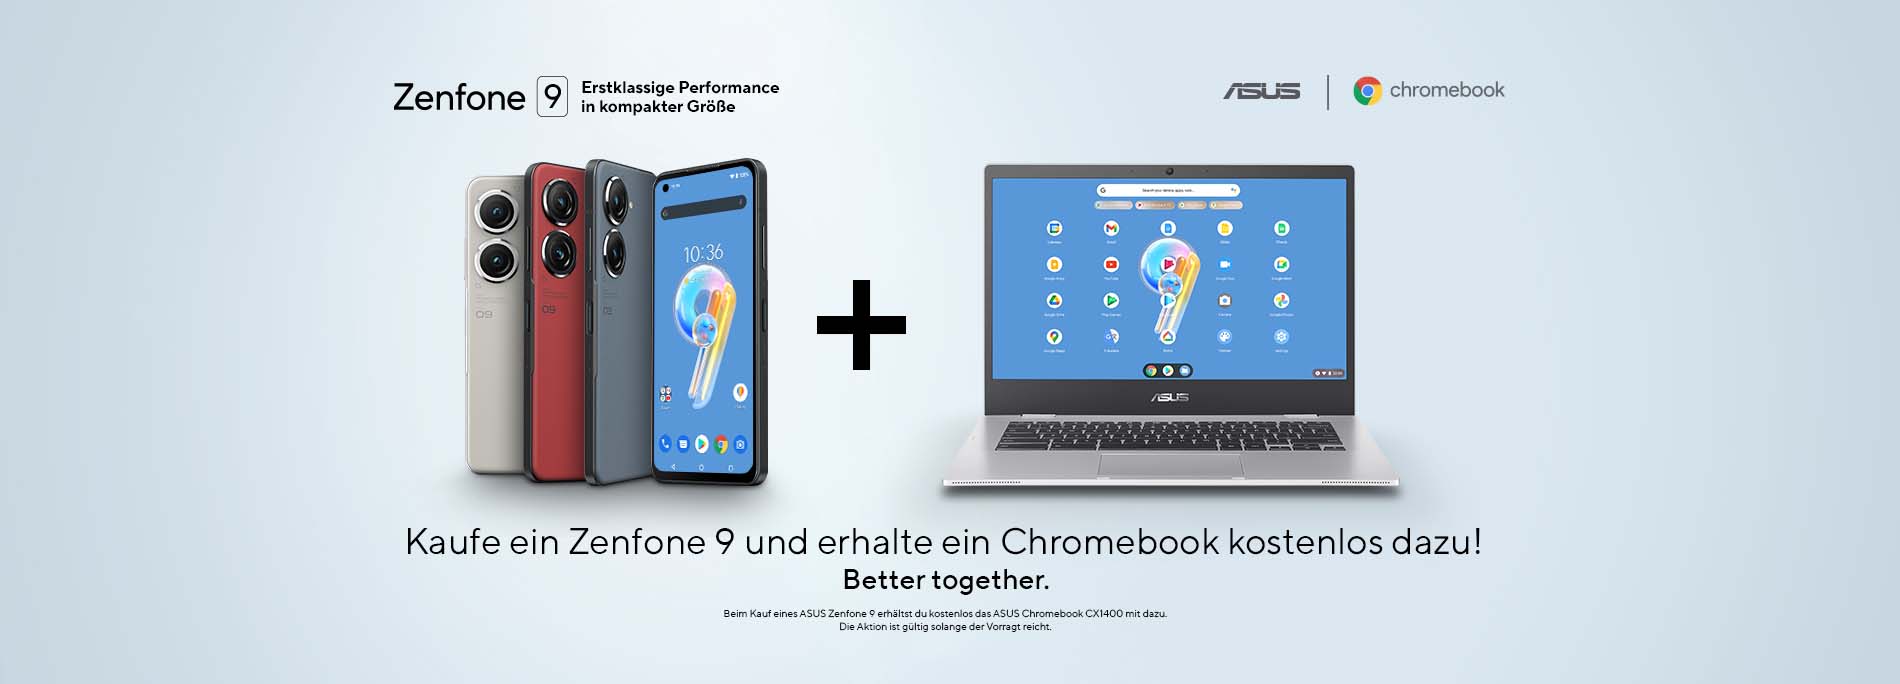 Kaufe ein Zenfone 9 und erhalte ein Chromebook gratis dazu!